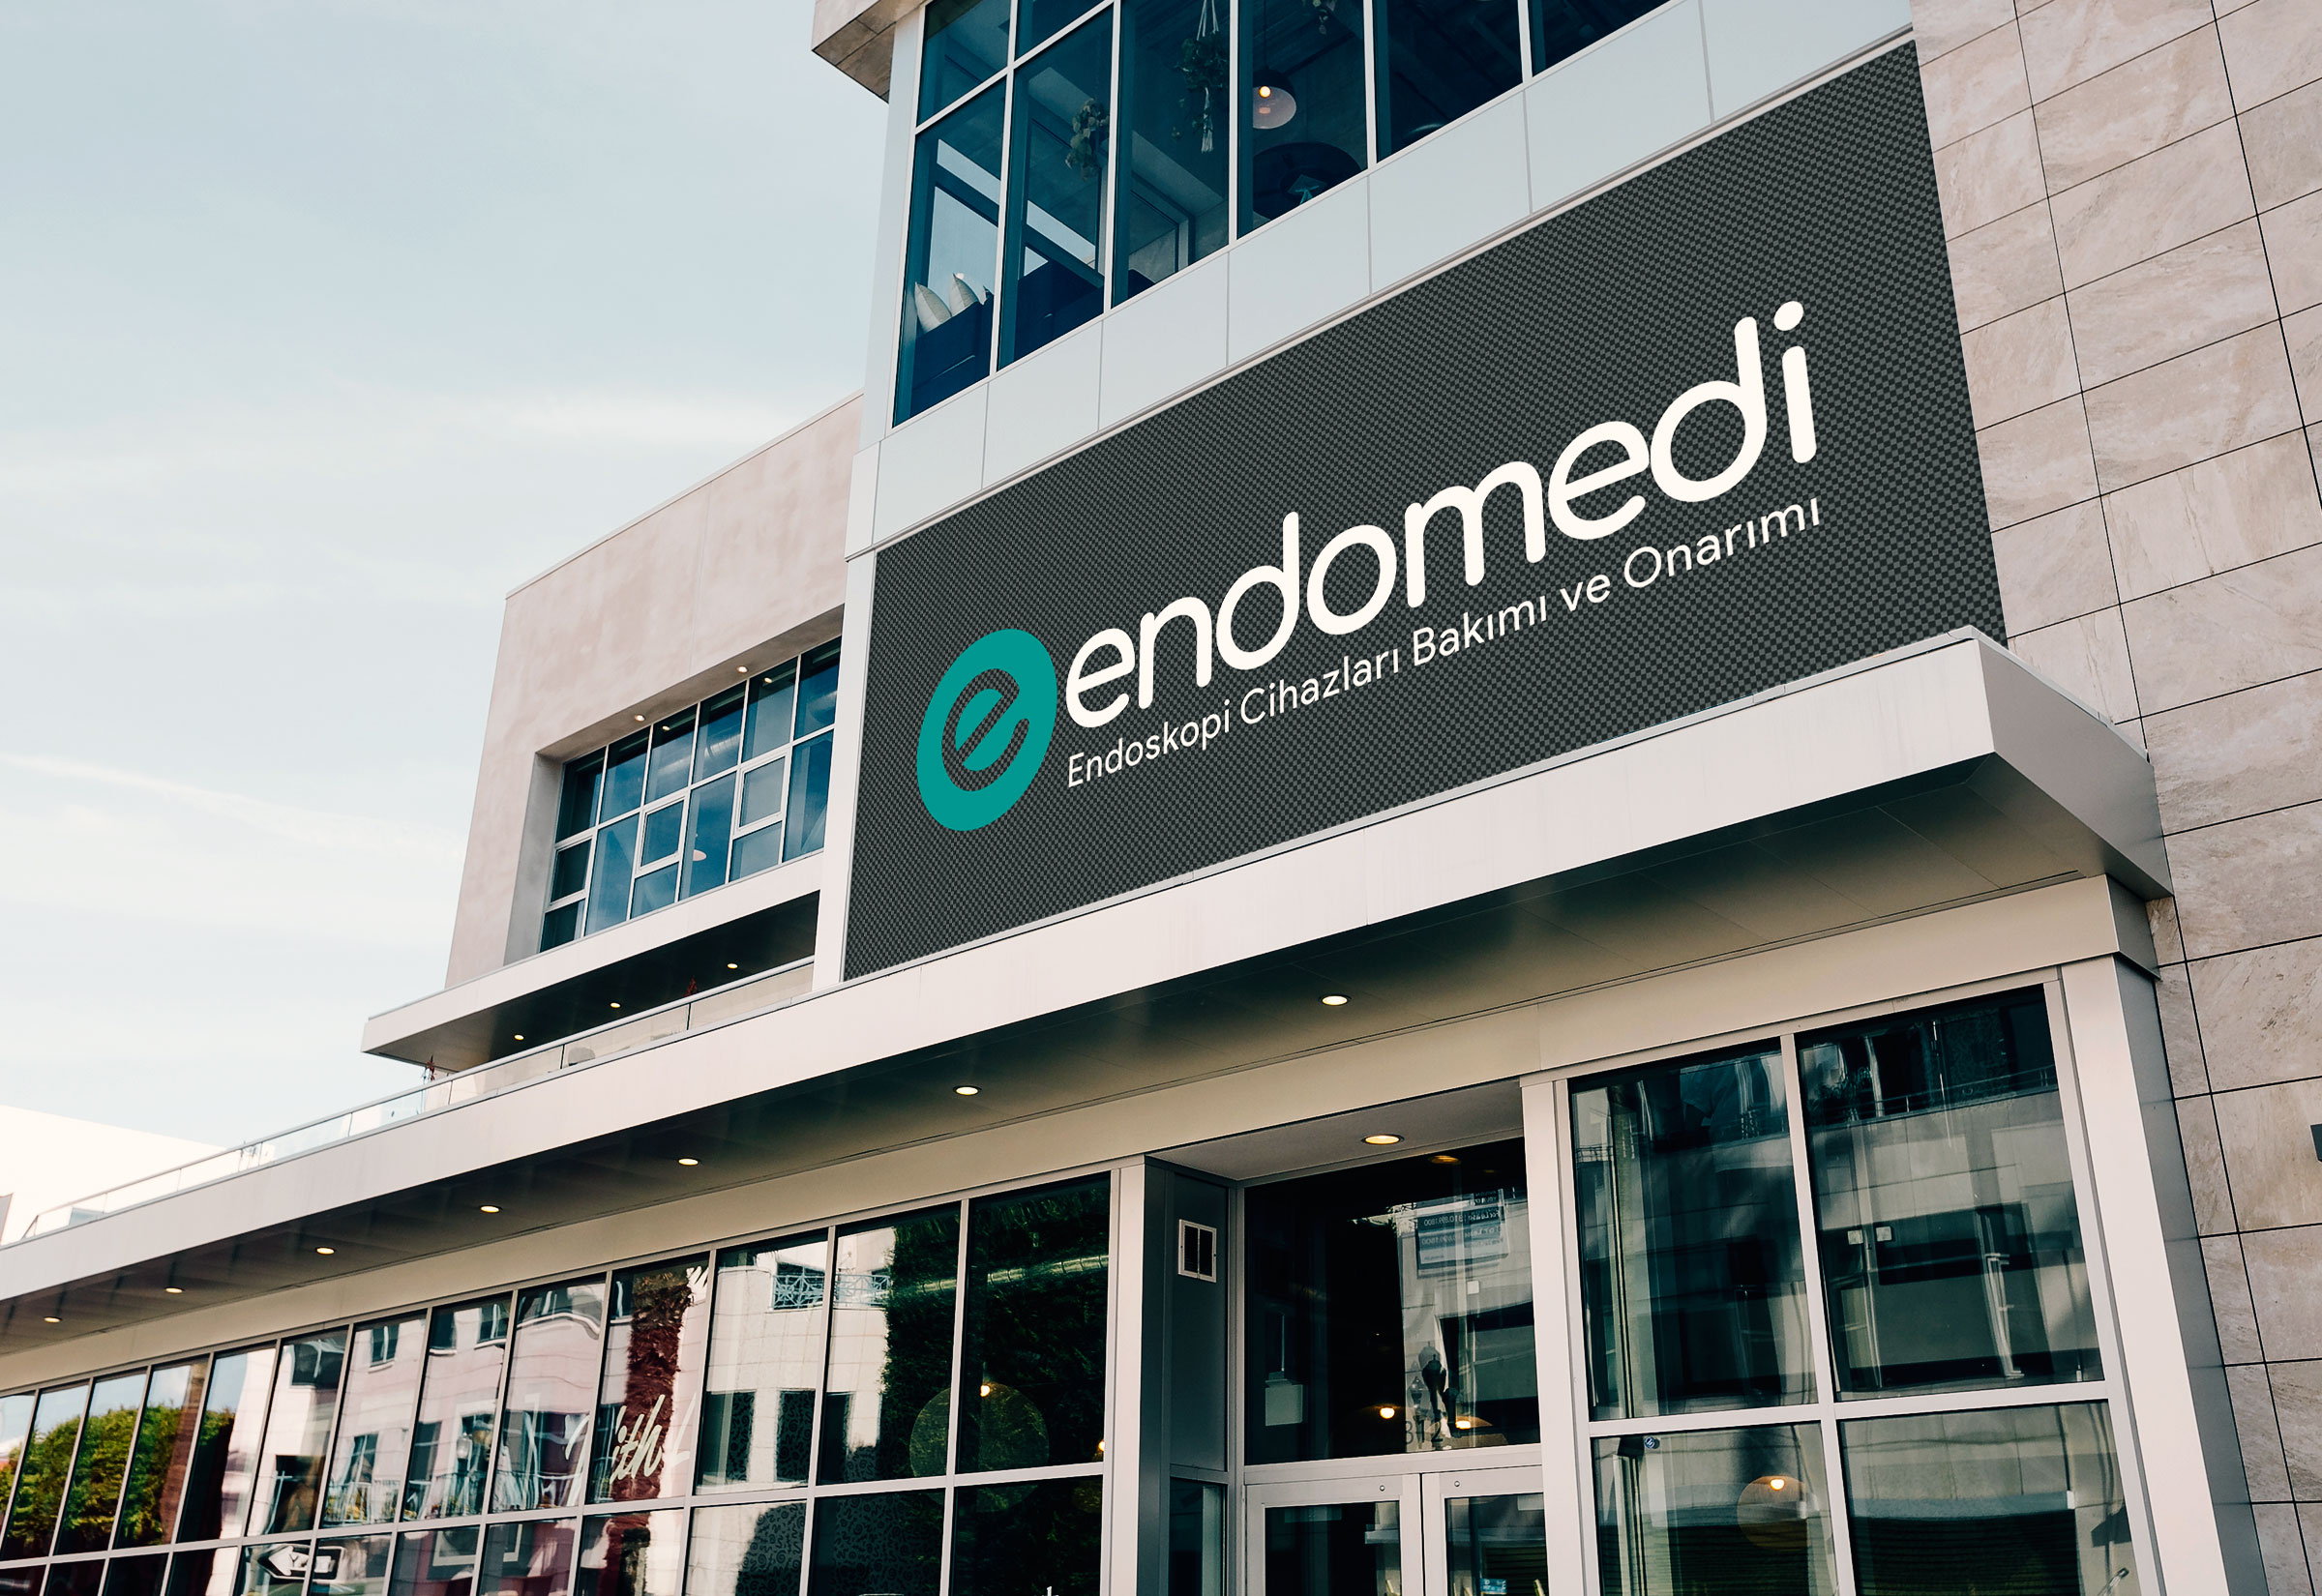 Endomedi medikal, Endoskopi cihazları tamir ve bakım servisi